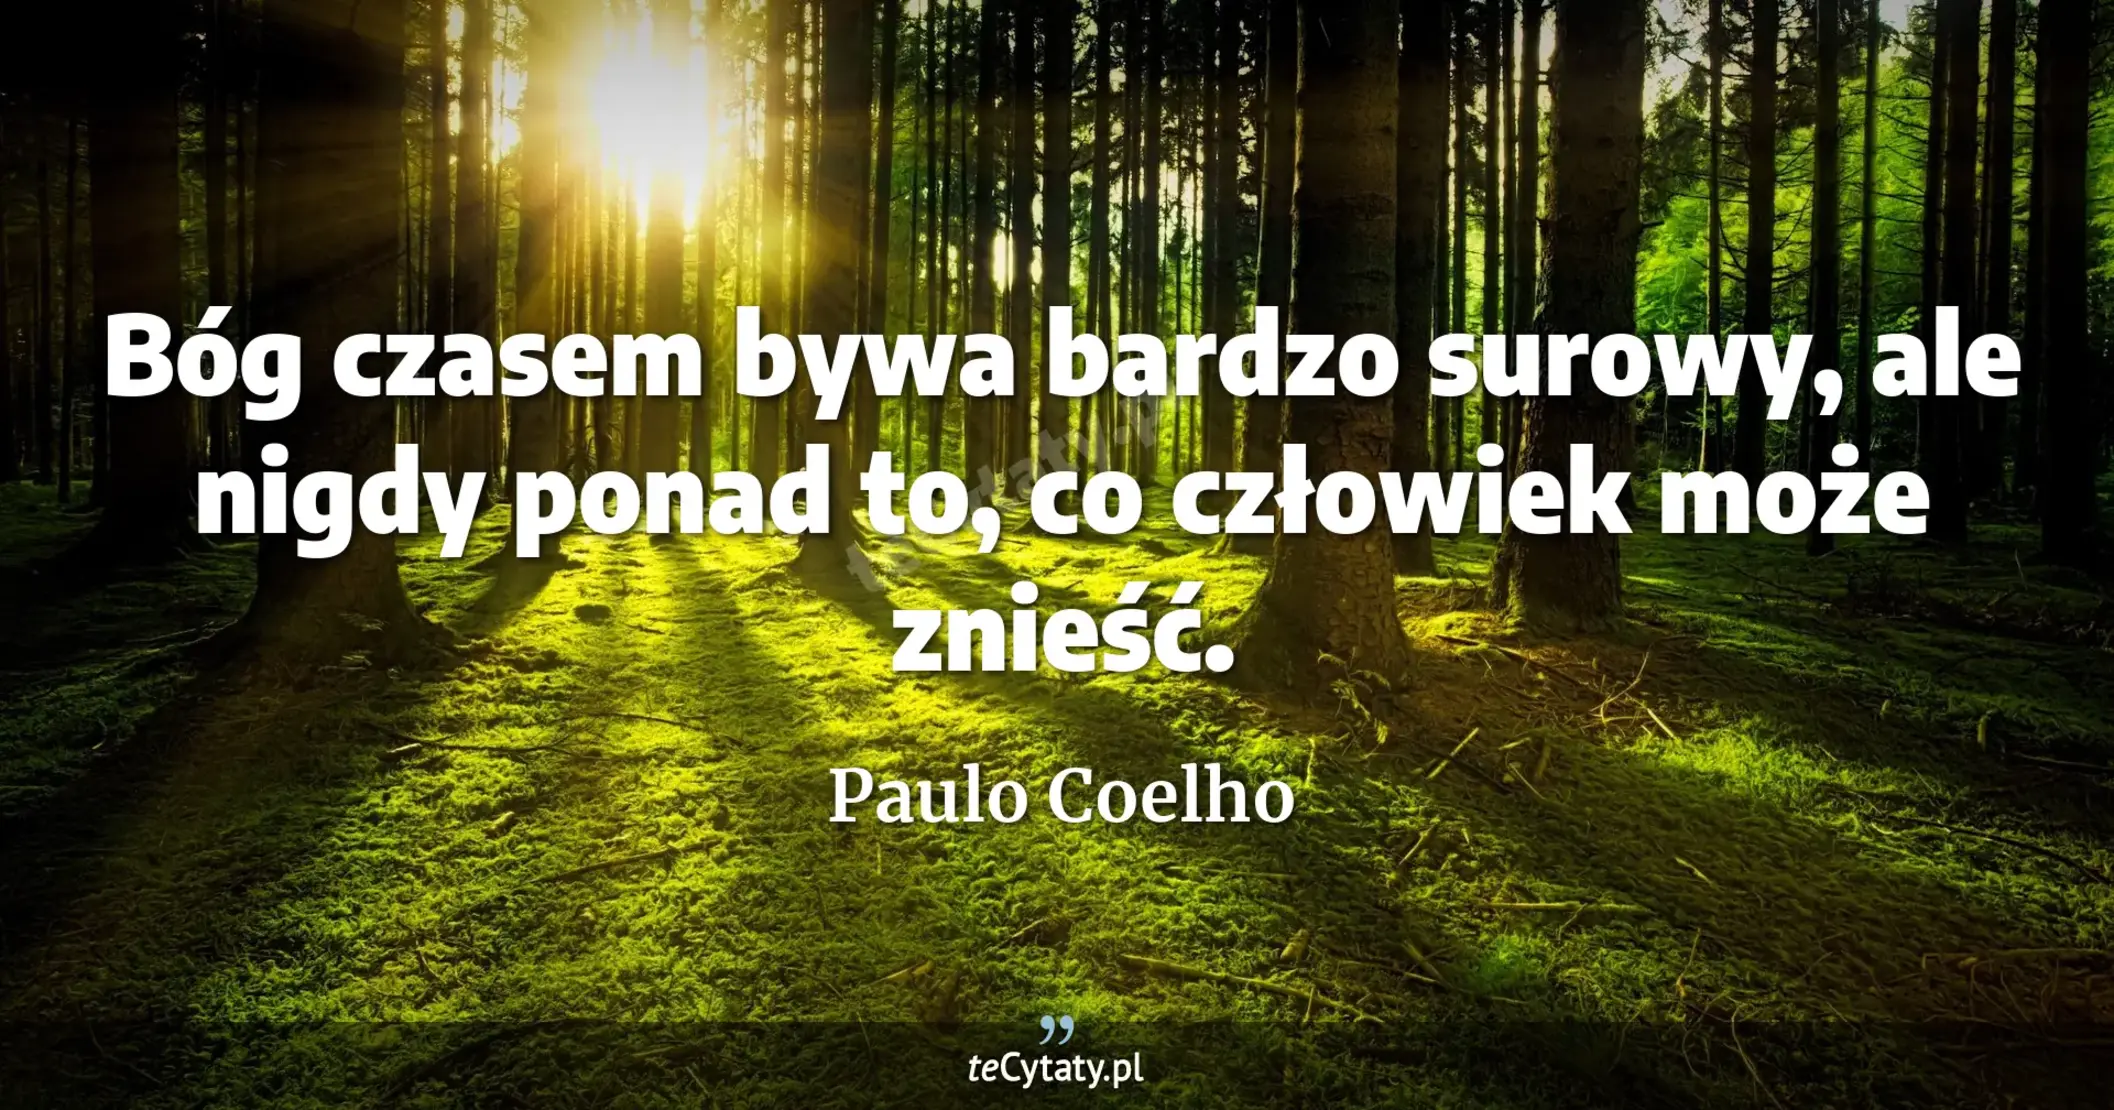 Bóg czasem bywa bardzo surowy, ale nigdy ponad to, co człowiek może znieść. - Paulo Coelho